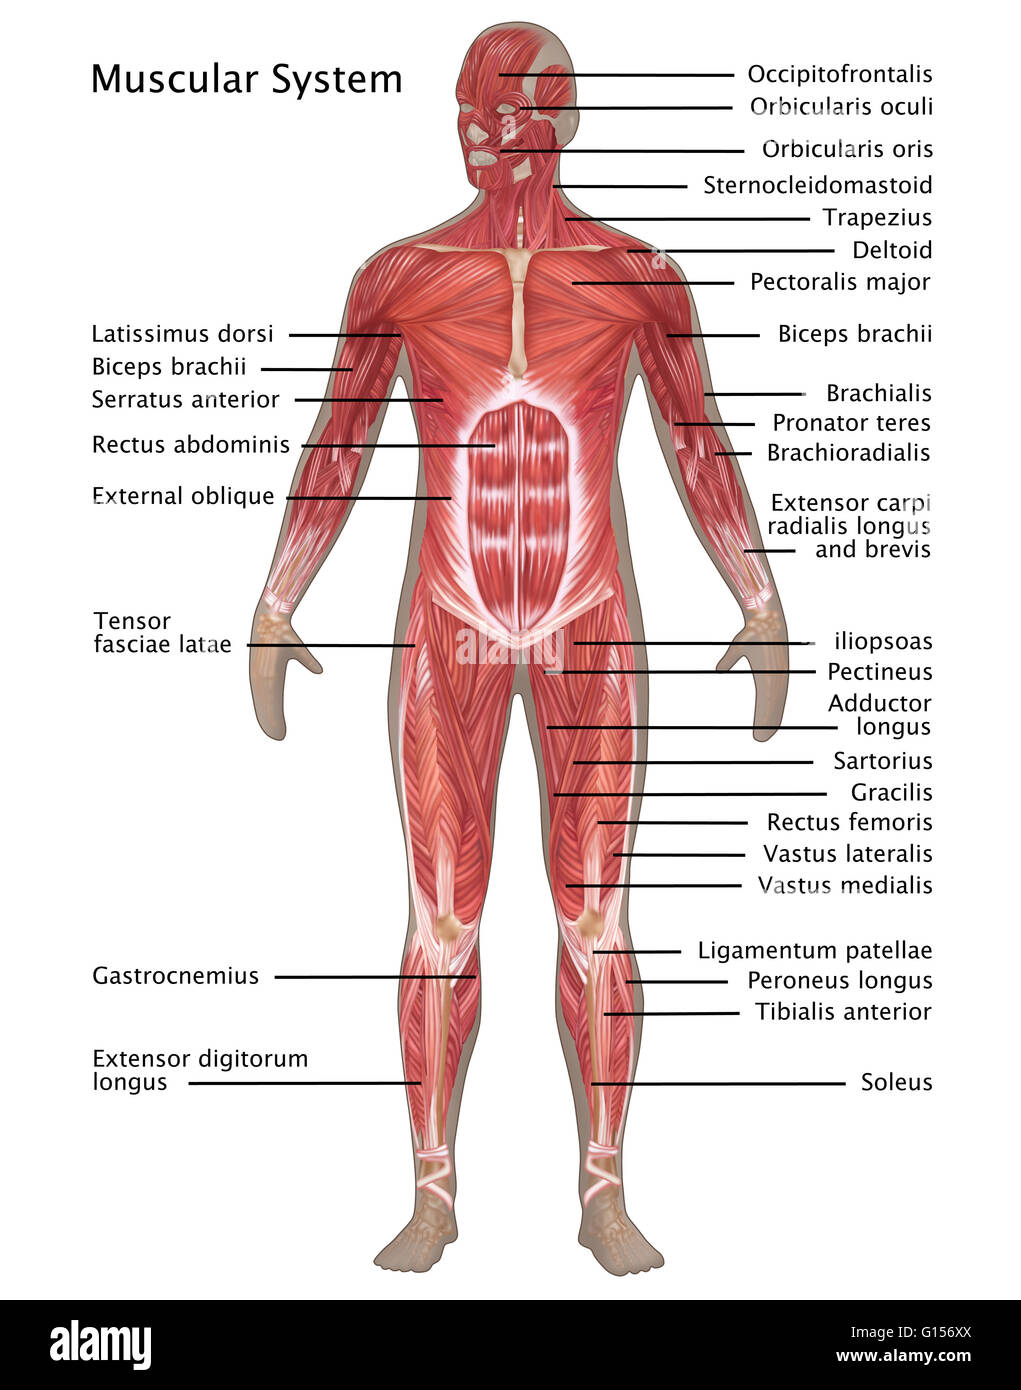 Illustration der Muskulatur in der männlichen Anatomie. Von oben nach unten beschriftet sind: Mandeln, Thymus, Lymphgefäße, Milz und Lymphknoten. Stockfoto